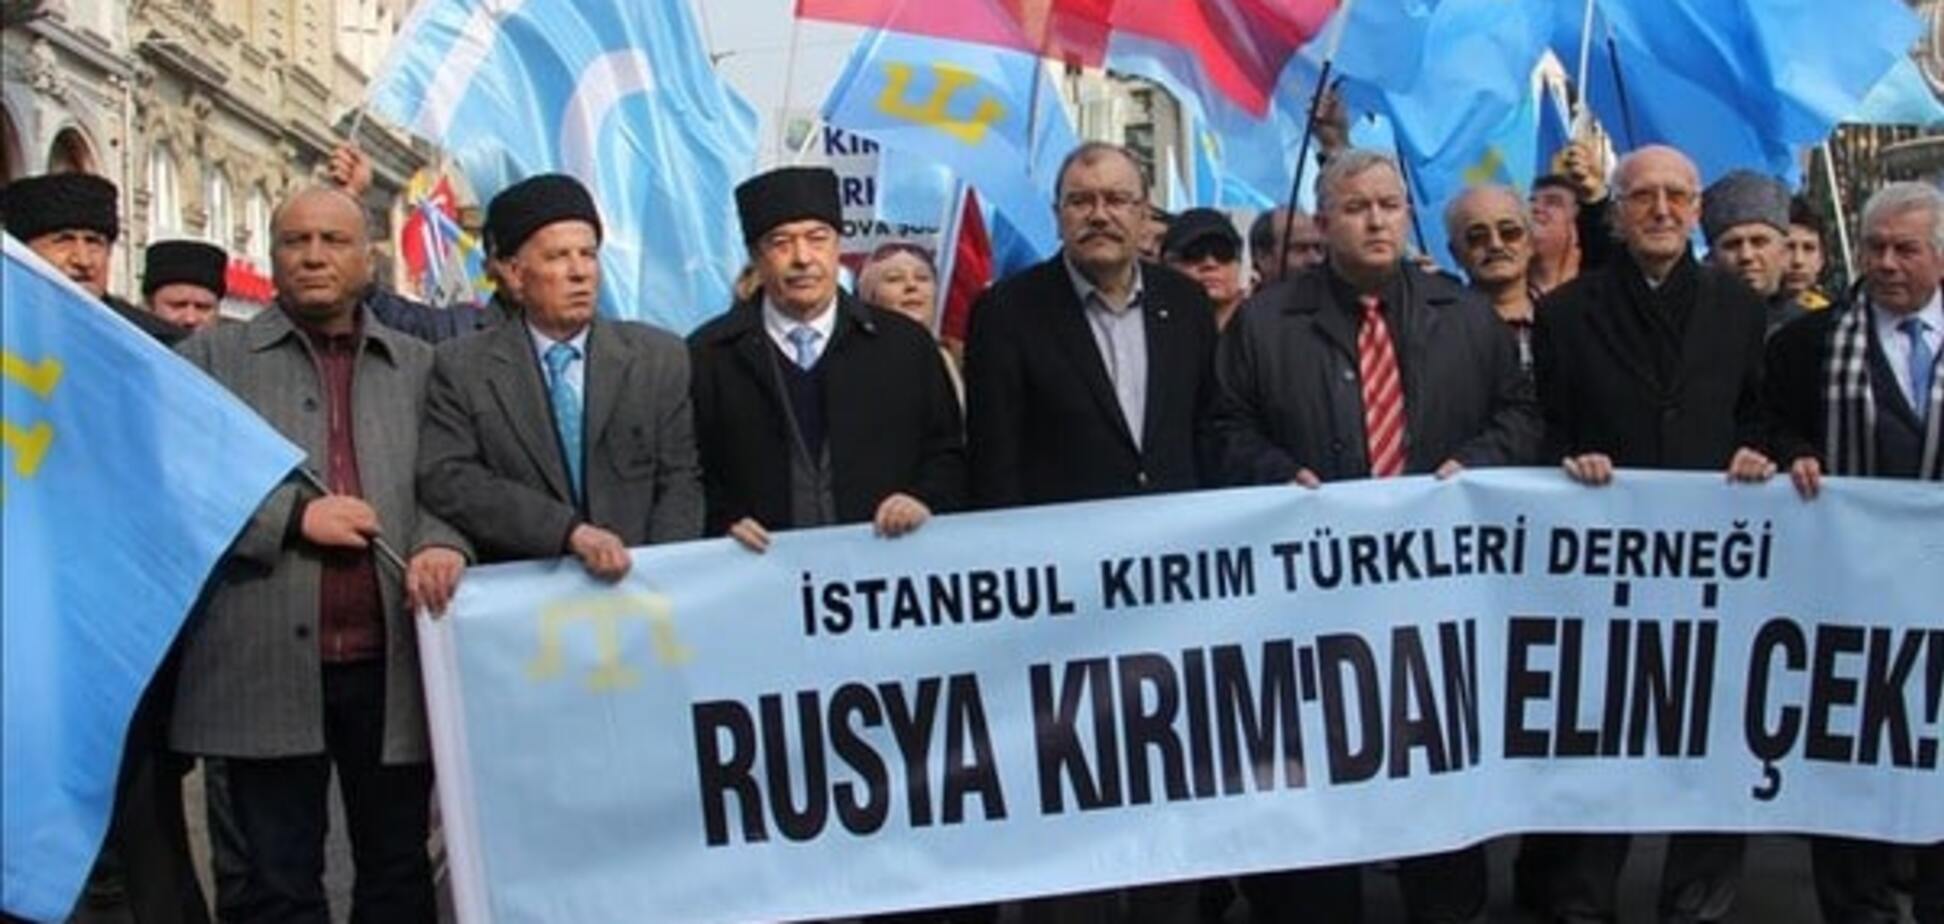 'Мы - кулак': в Турции устроили акцию против аннексии Крыма